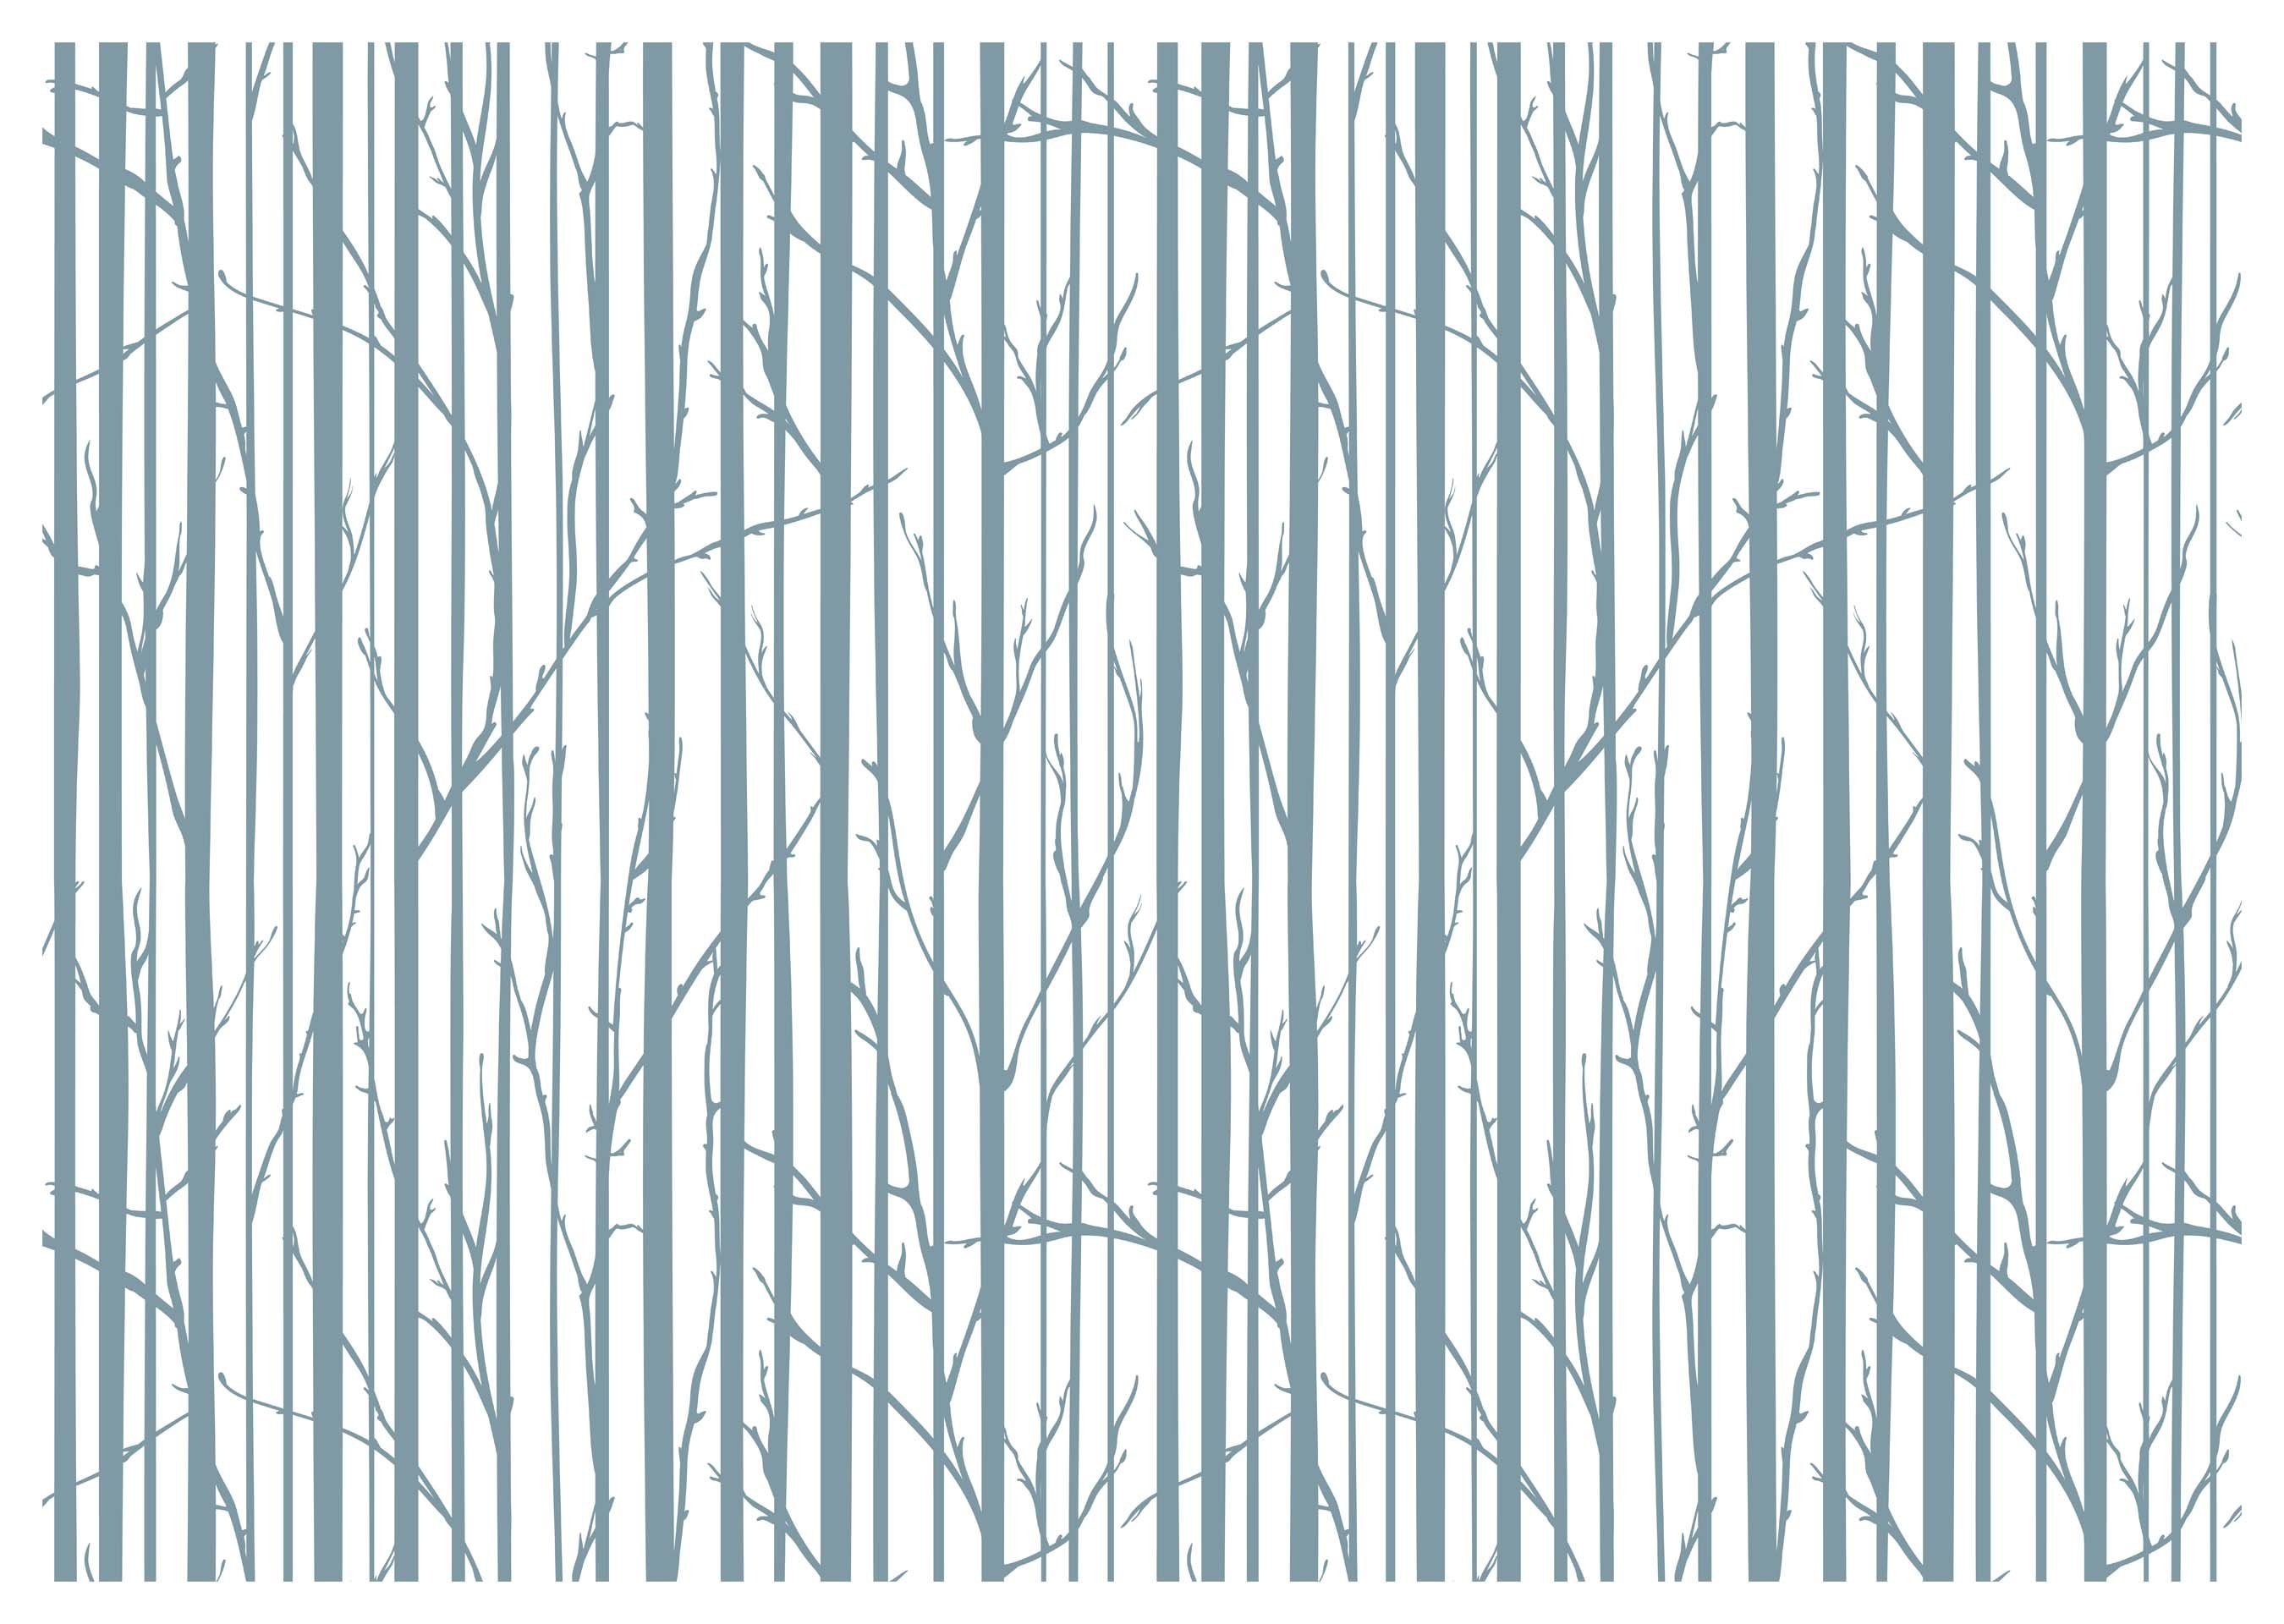 Motivtapete, wandmotiv24 Wald glatt, minimalistisch, matt, Fototapete Wandtapete, Bäume Vliestapete